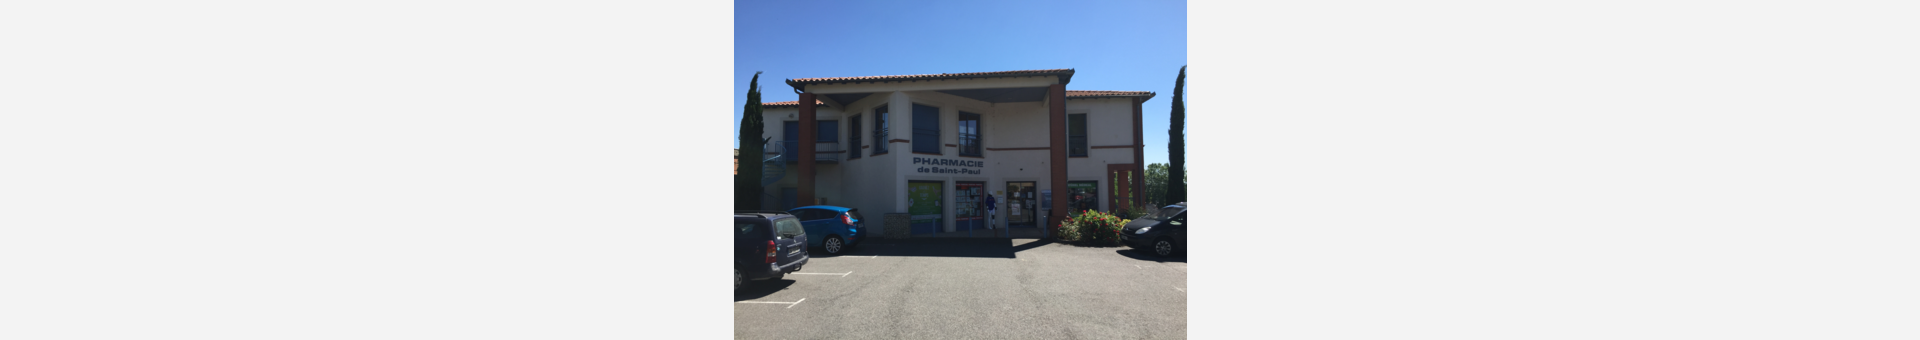 Pharmacie De Saint-Paul Auterive,Auterive